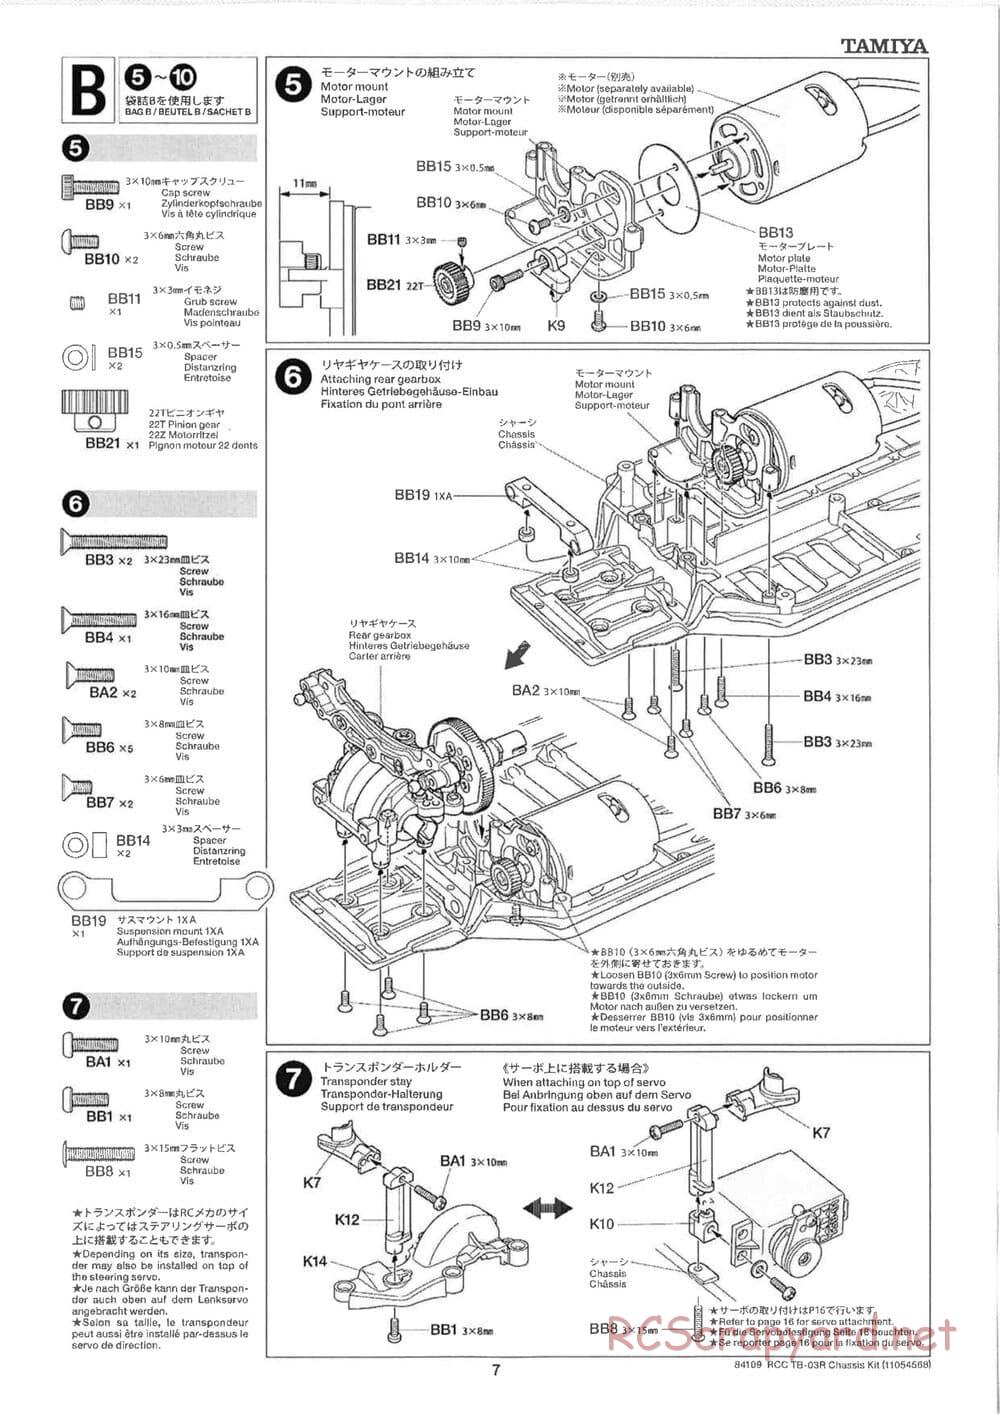 Tamiya - TB-03R Chassis - Manual - Page 7